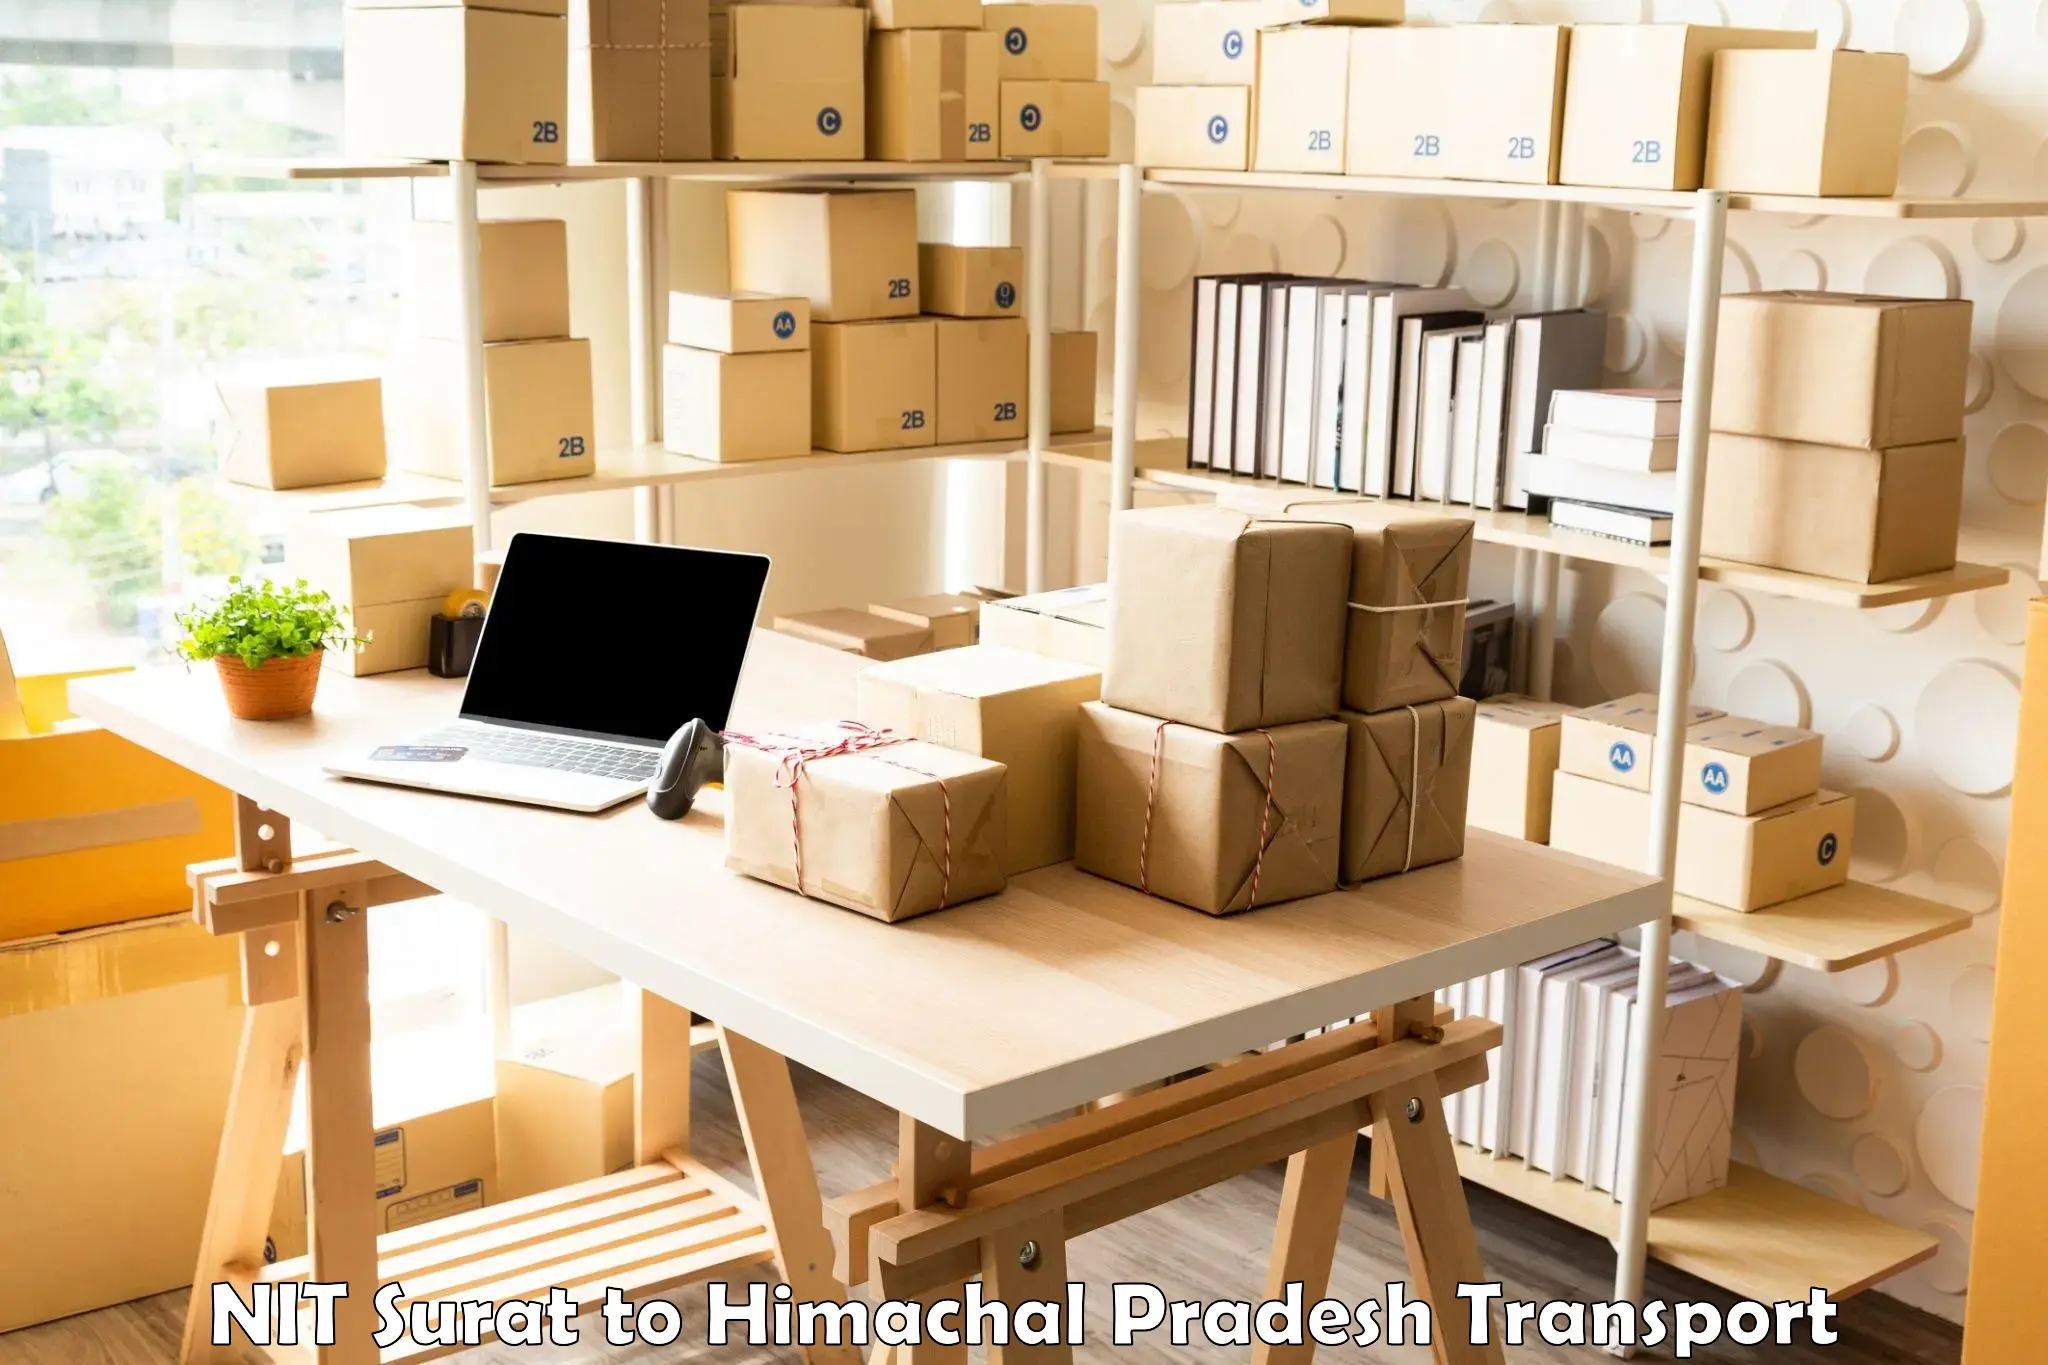 Furniture transport service NIT Surat to Chintpurni